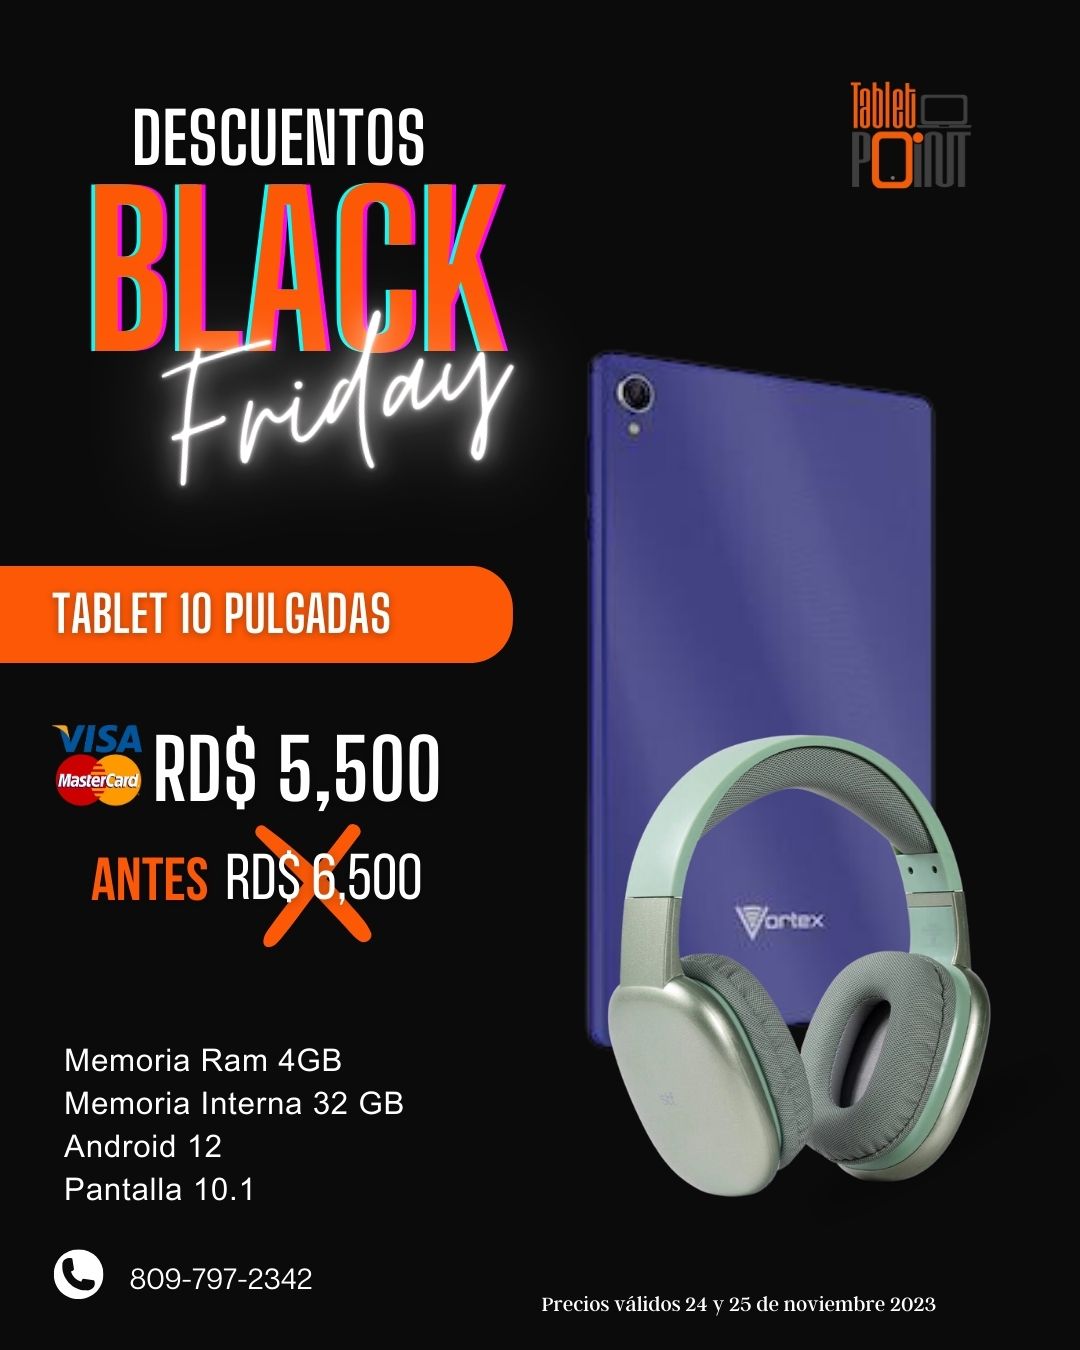 Tablet Vortex T10 - Oferta Black Friday en Santo Domingo DN Foto 7197057-1.jpg